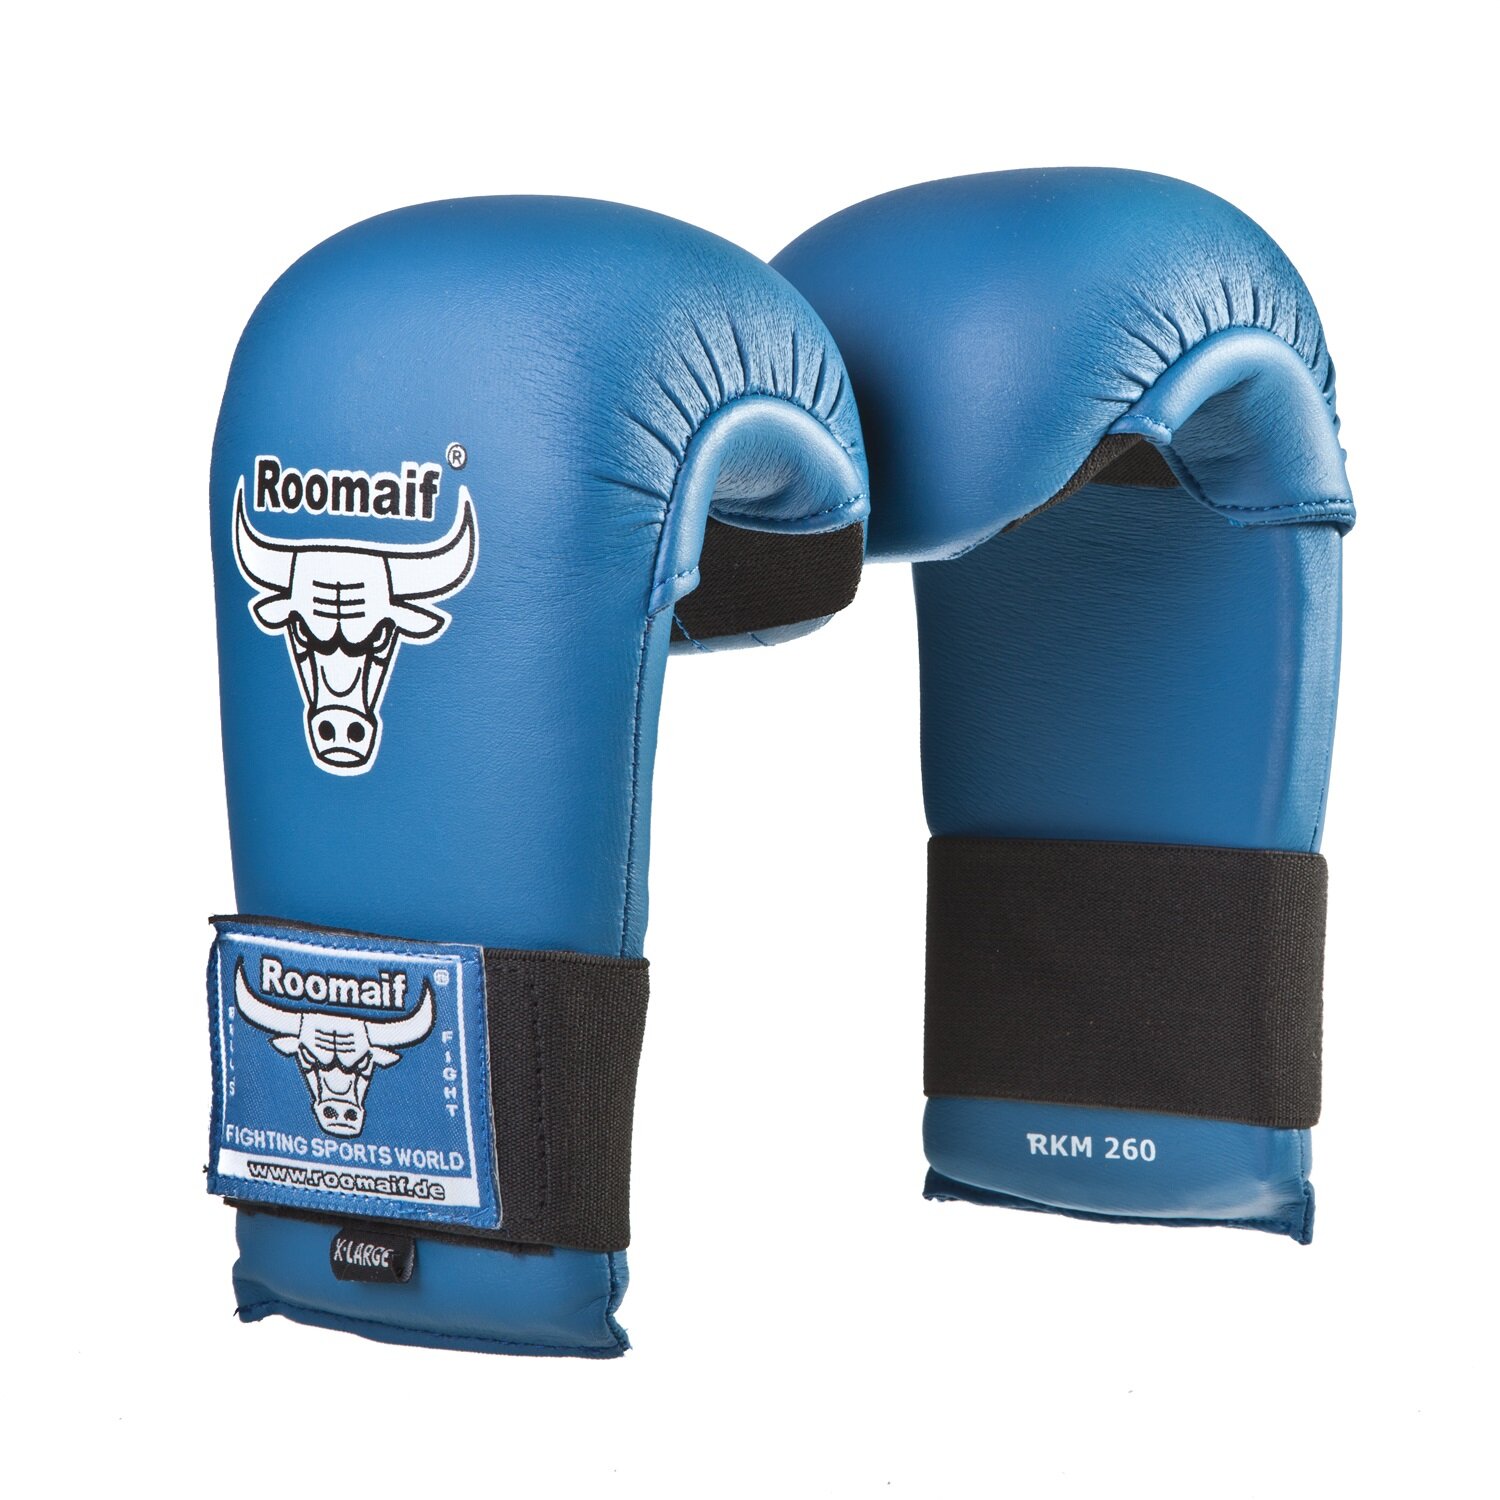 Спарринговые перчатки для каратэ Roomaif Rkm-260 пу синие размер XL